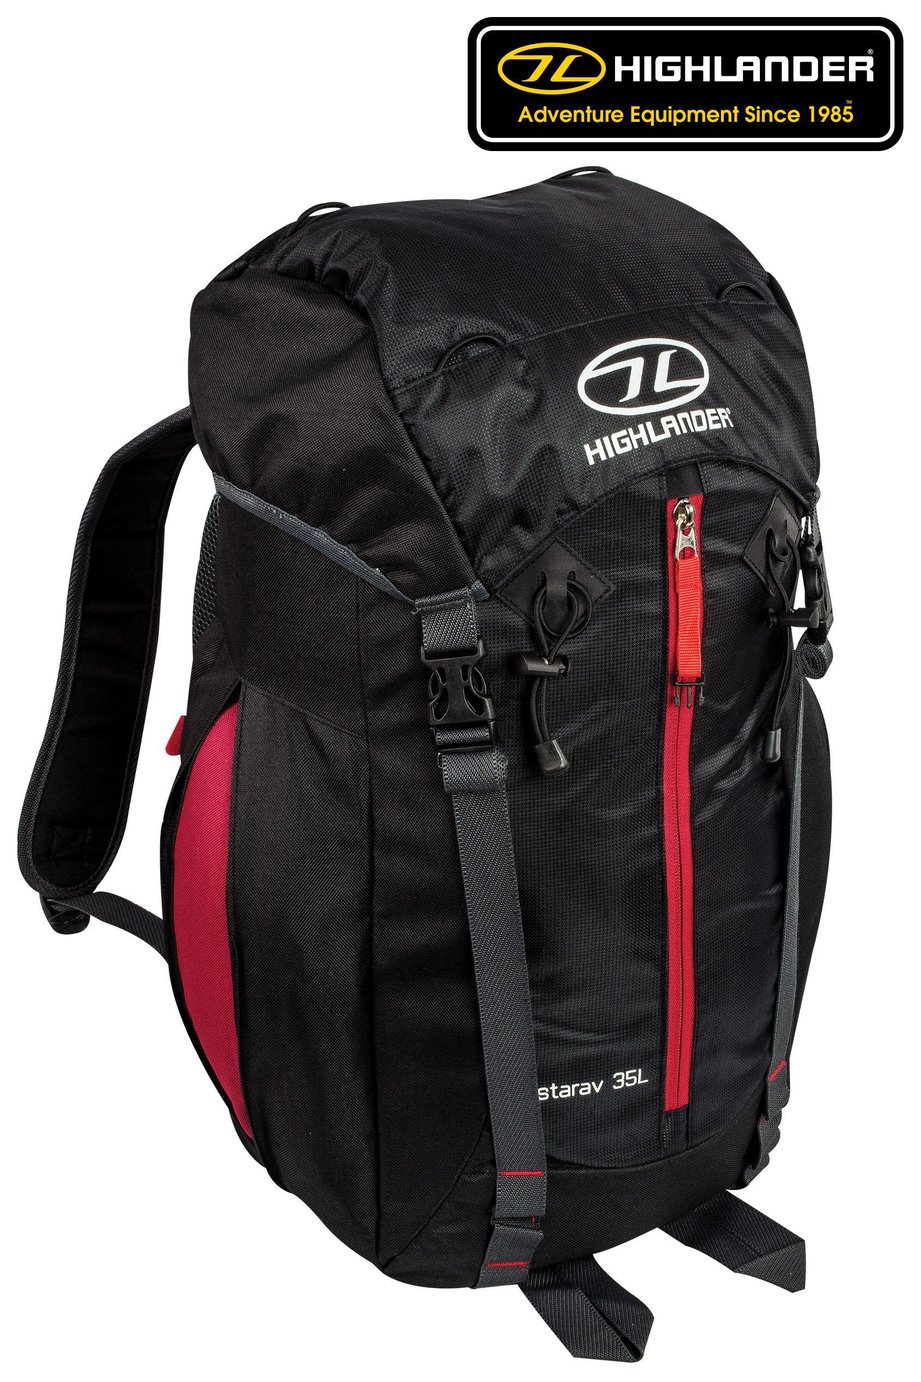 Highlander Starav 35L Backpack - Black and Red